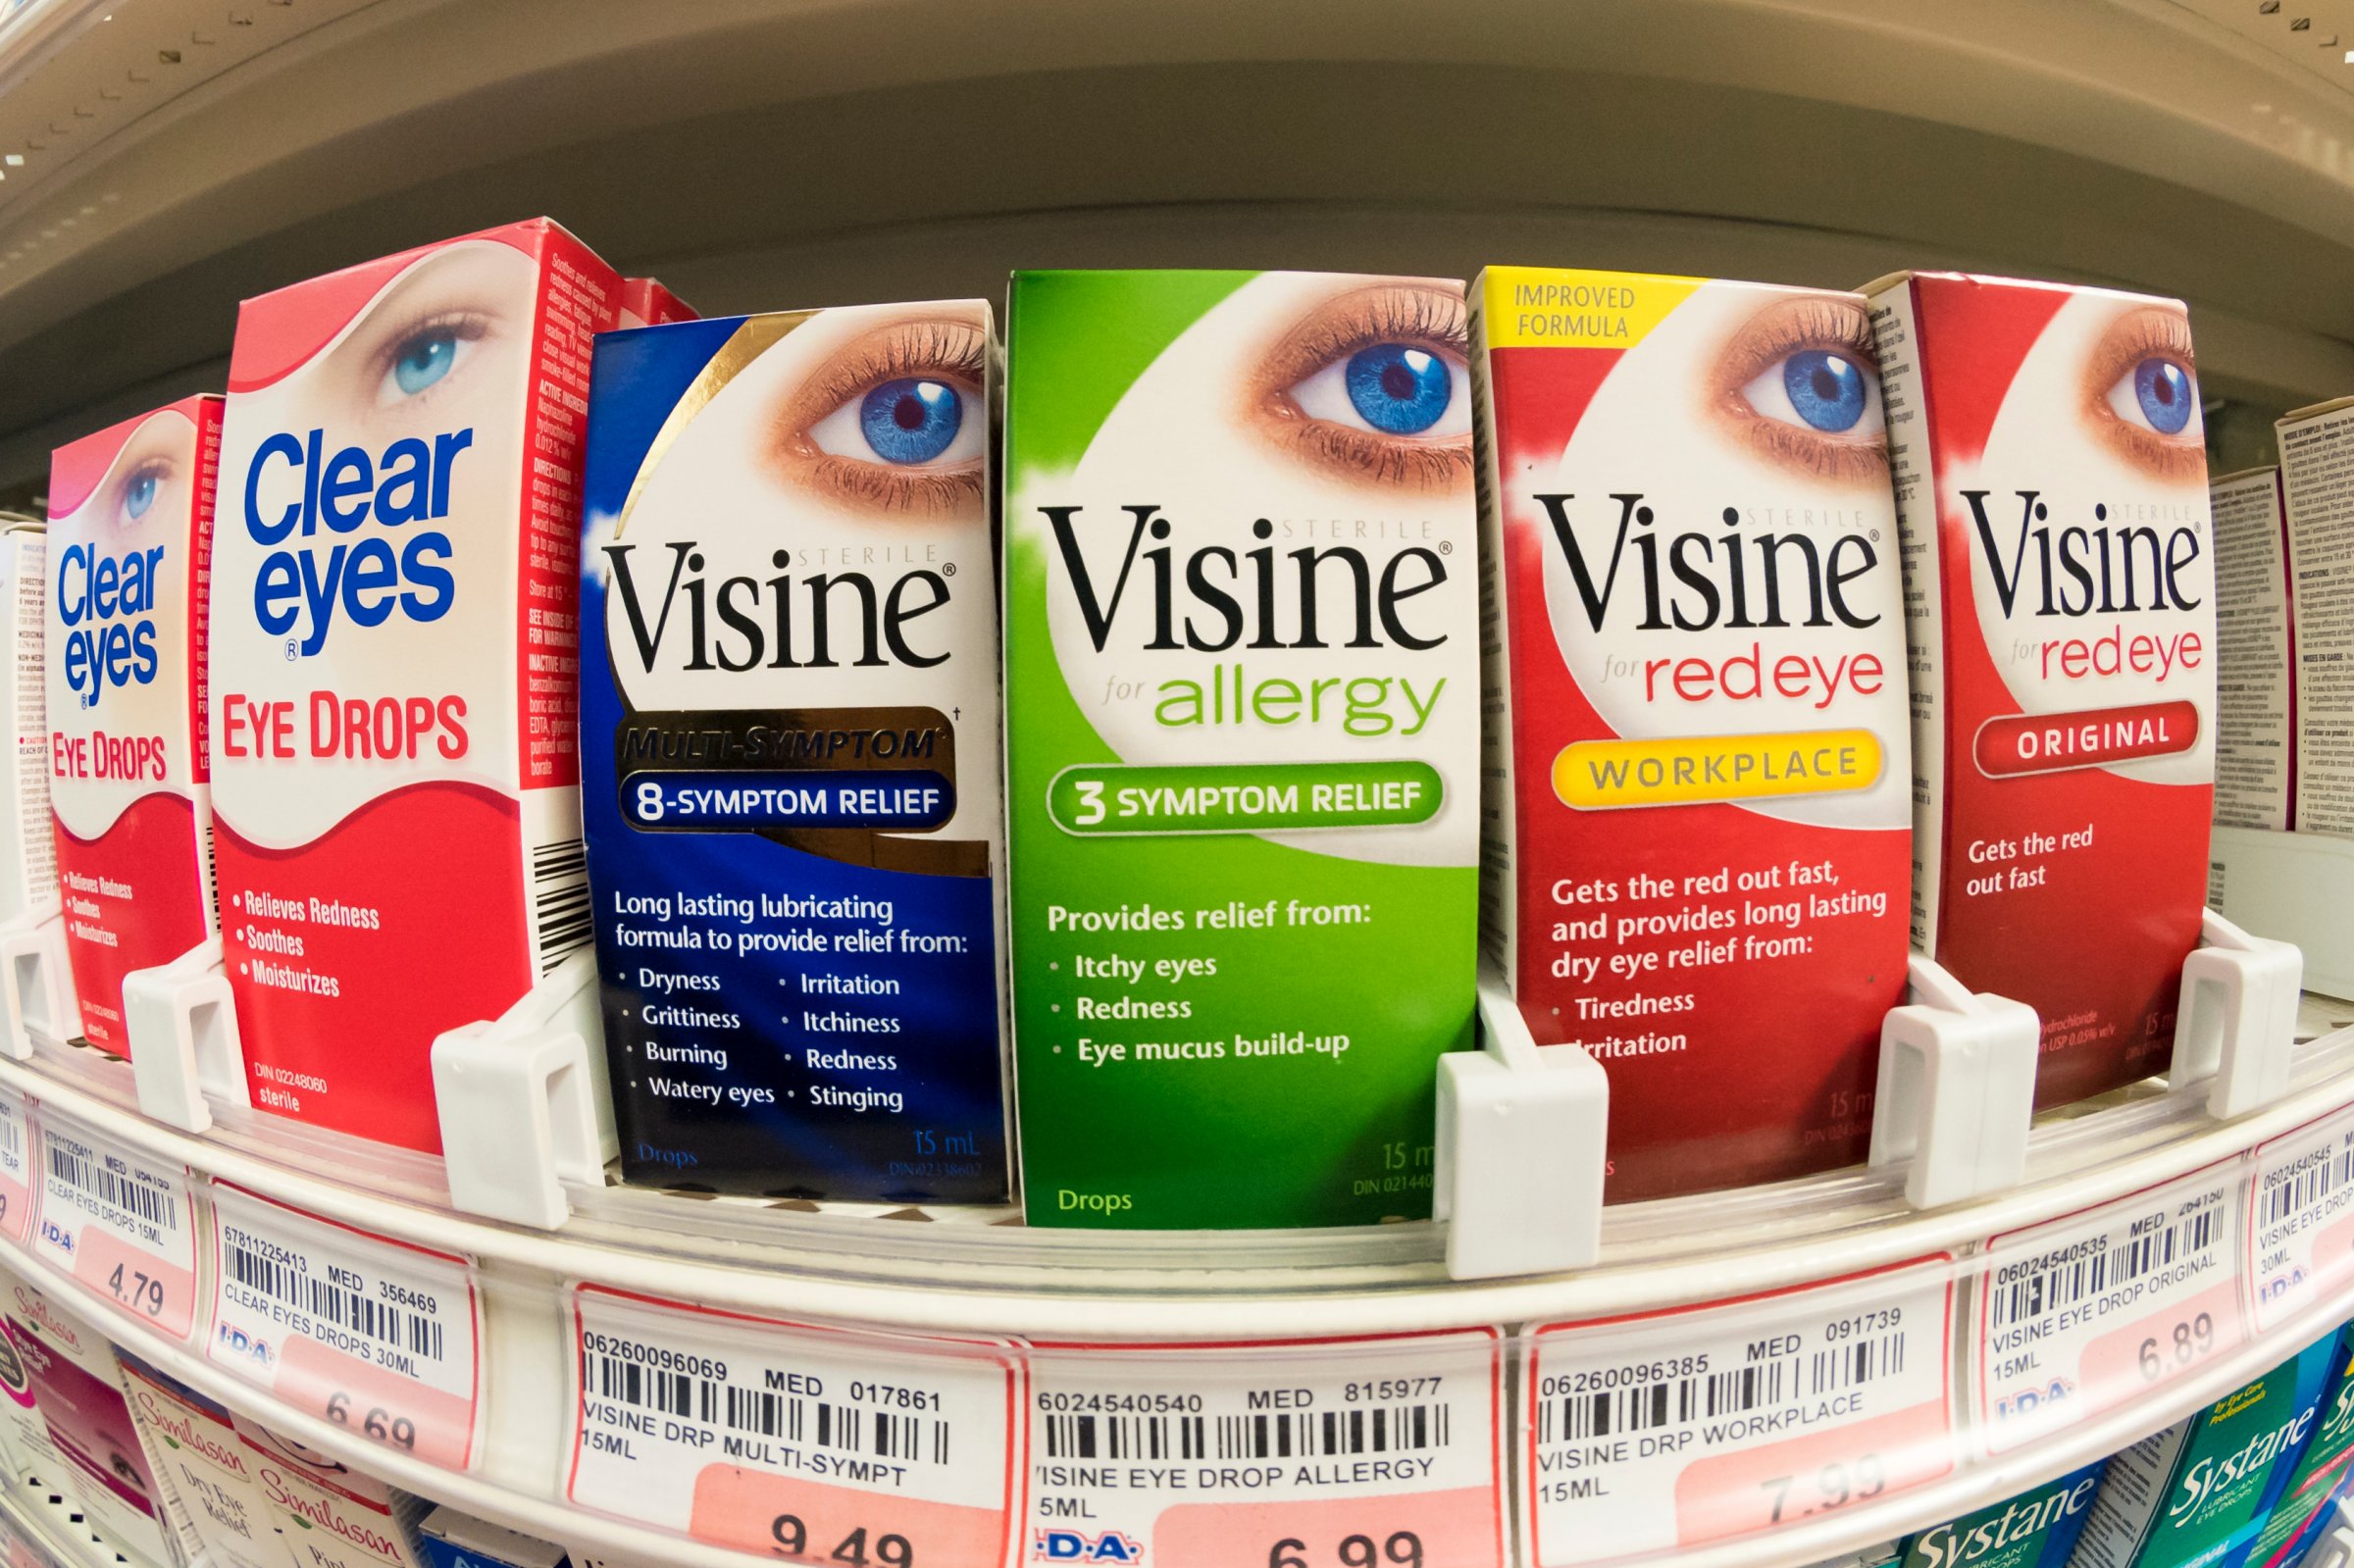 Visine, over the counter eye drops in pharmacy shelf. Visine